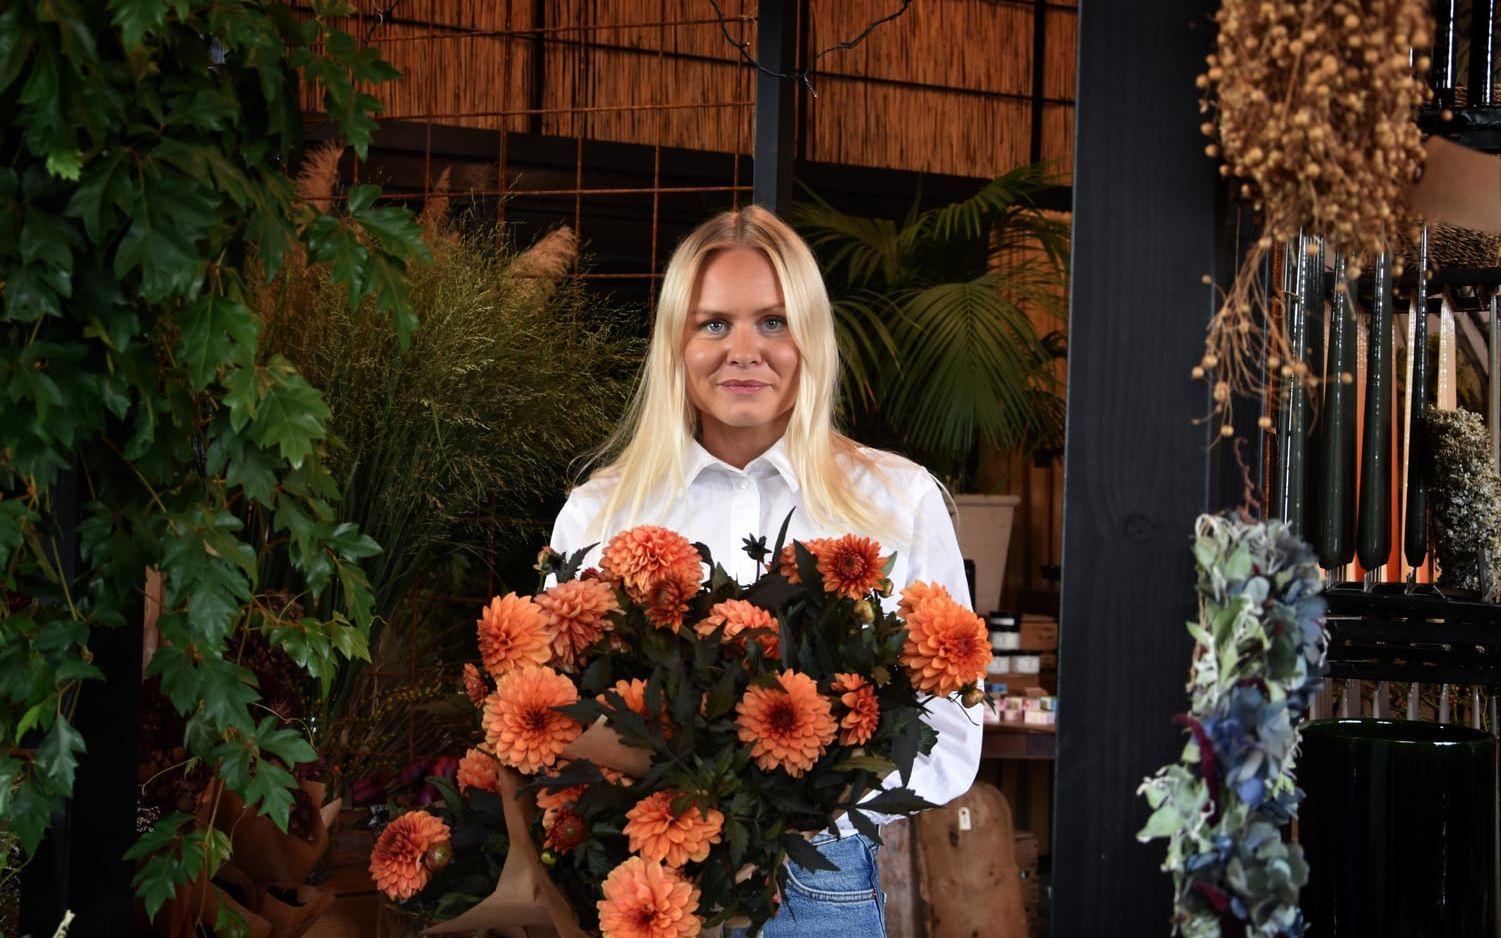 Johanna Hultgren bytte klassrummet mot blomsterbutiken. ”Det är kul med det kreativa även om jag saknar läraryrket” säger hon.